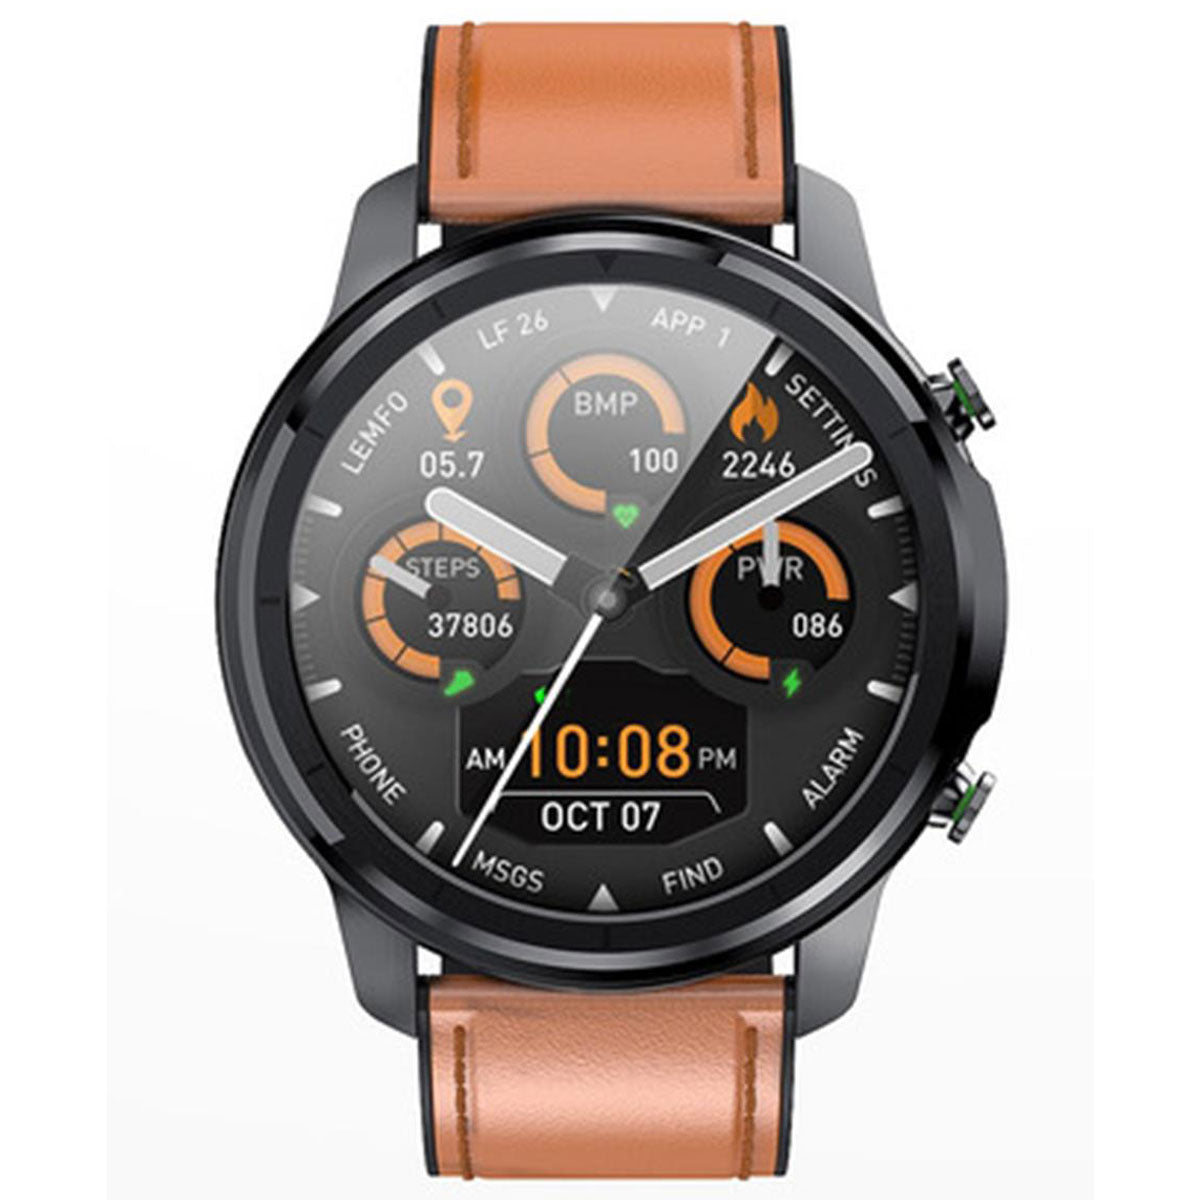 Reloj Inteligente Smart watch Fralugio Lf26 Piel Notificaciones de Redes Sociales